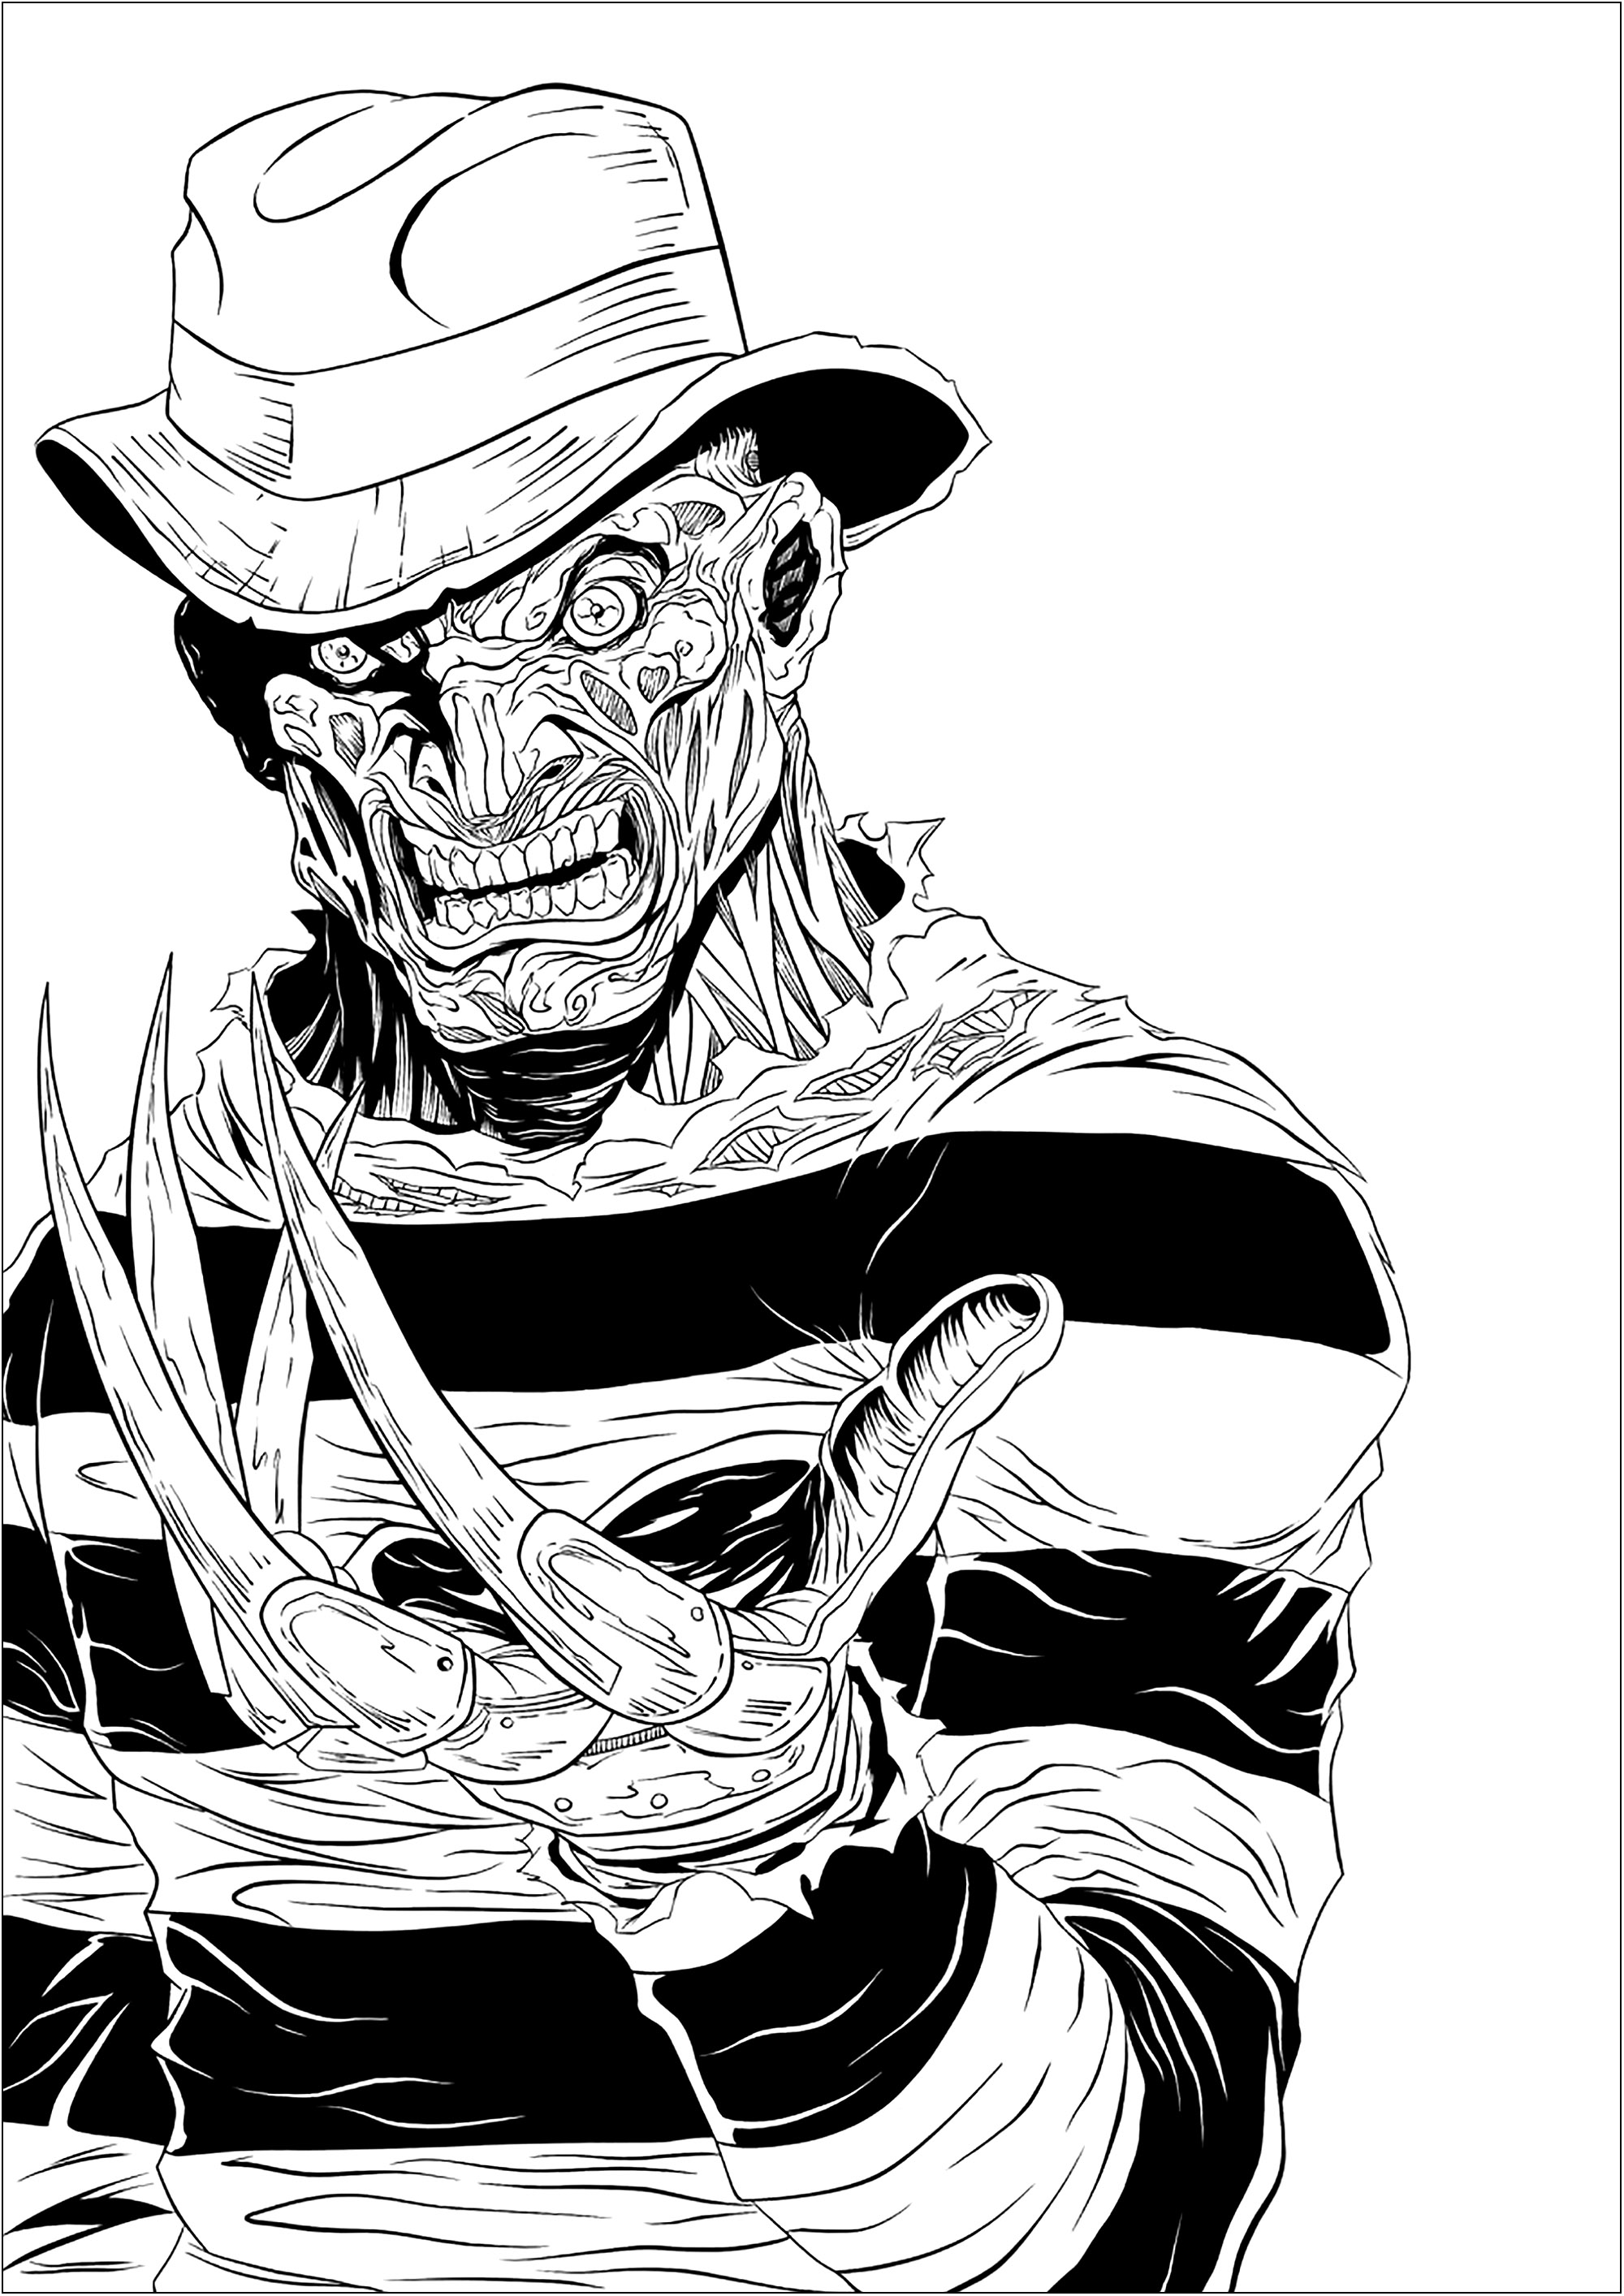 O assustador Freddy Krueger e as suas garras afiadas, Artista : Digital Inkz